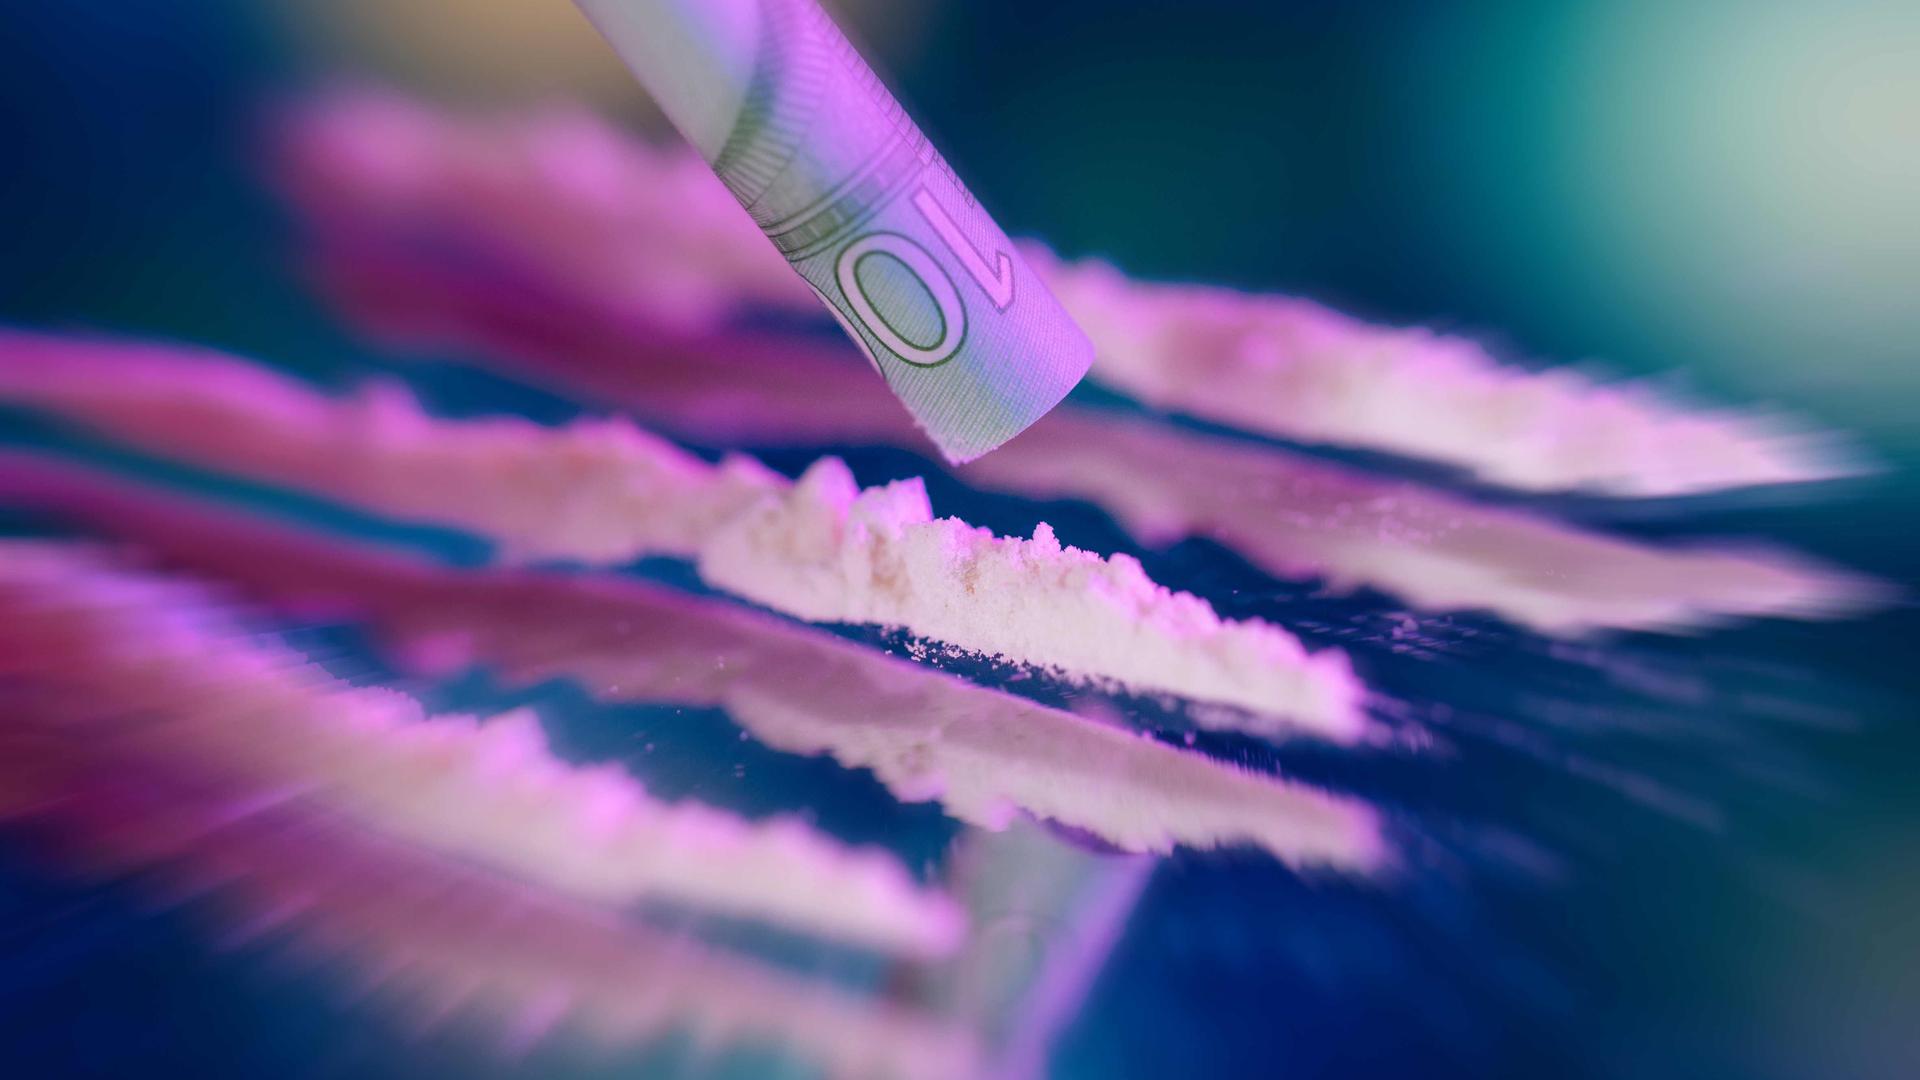 Kokain mit Rasierklinge und Geldschein *** Cocaine with razor blade and bank note Foto:xC.xHardtx/xFuturexImage